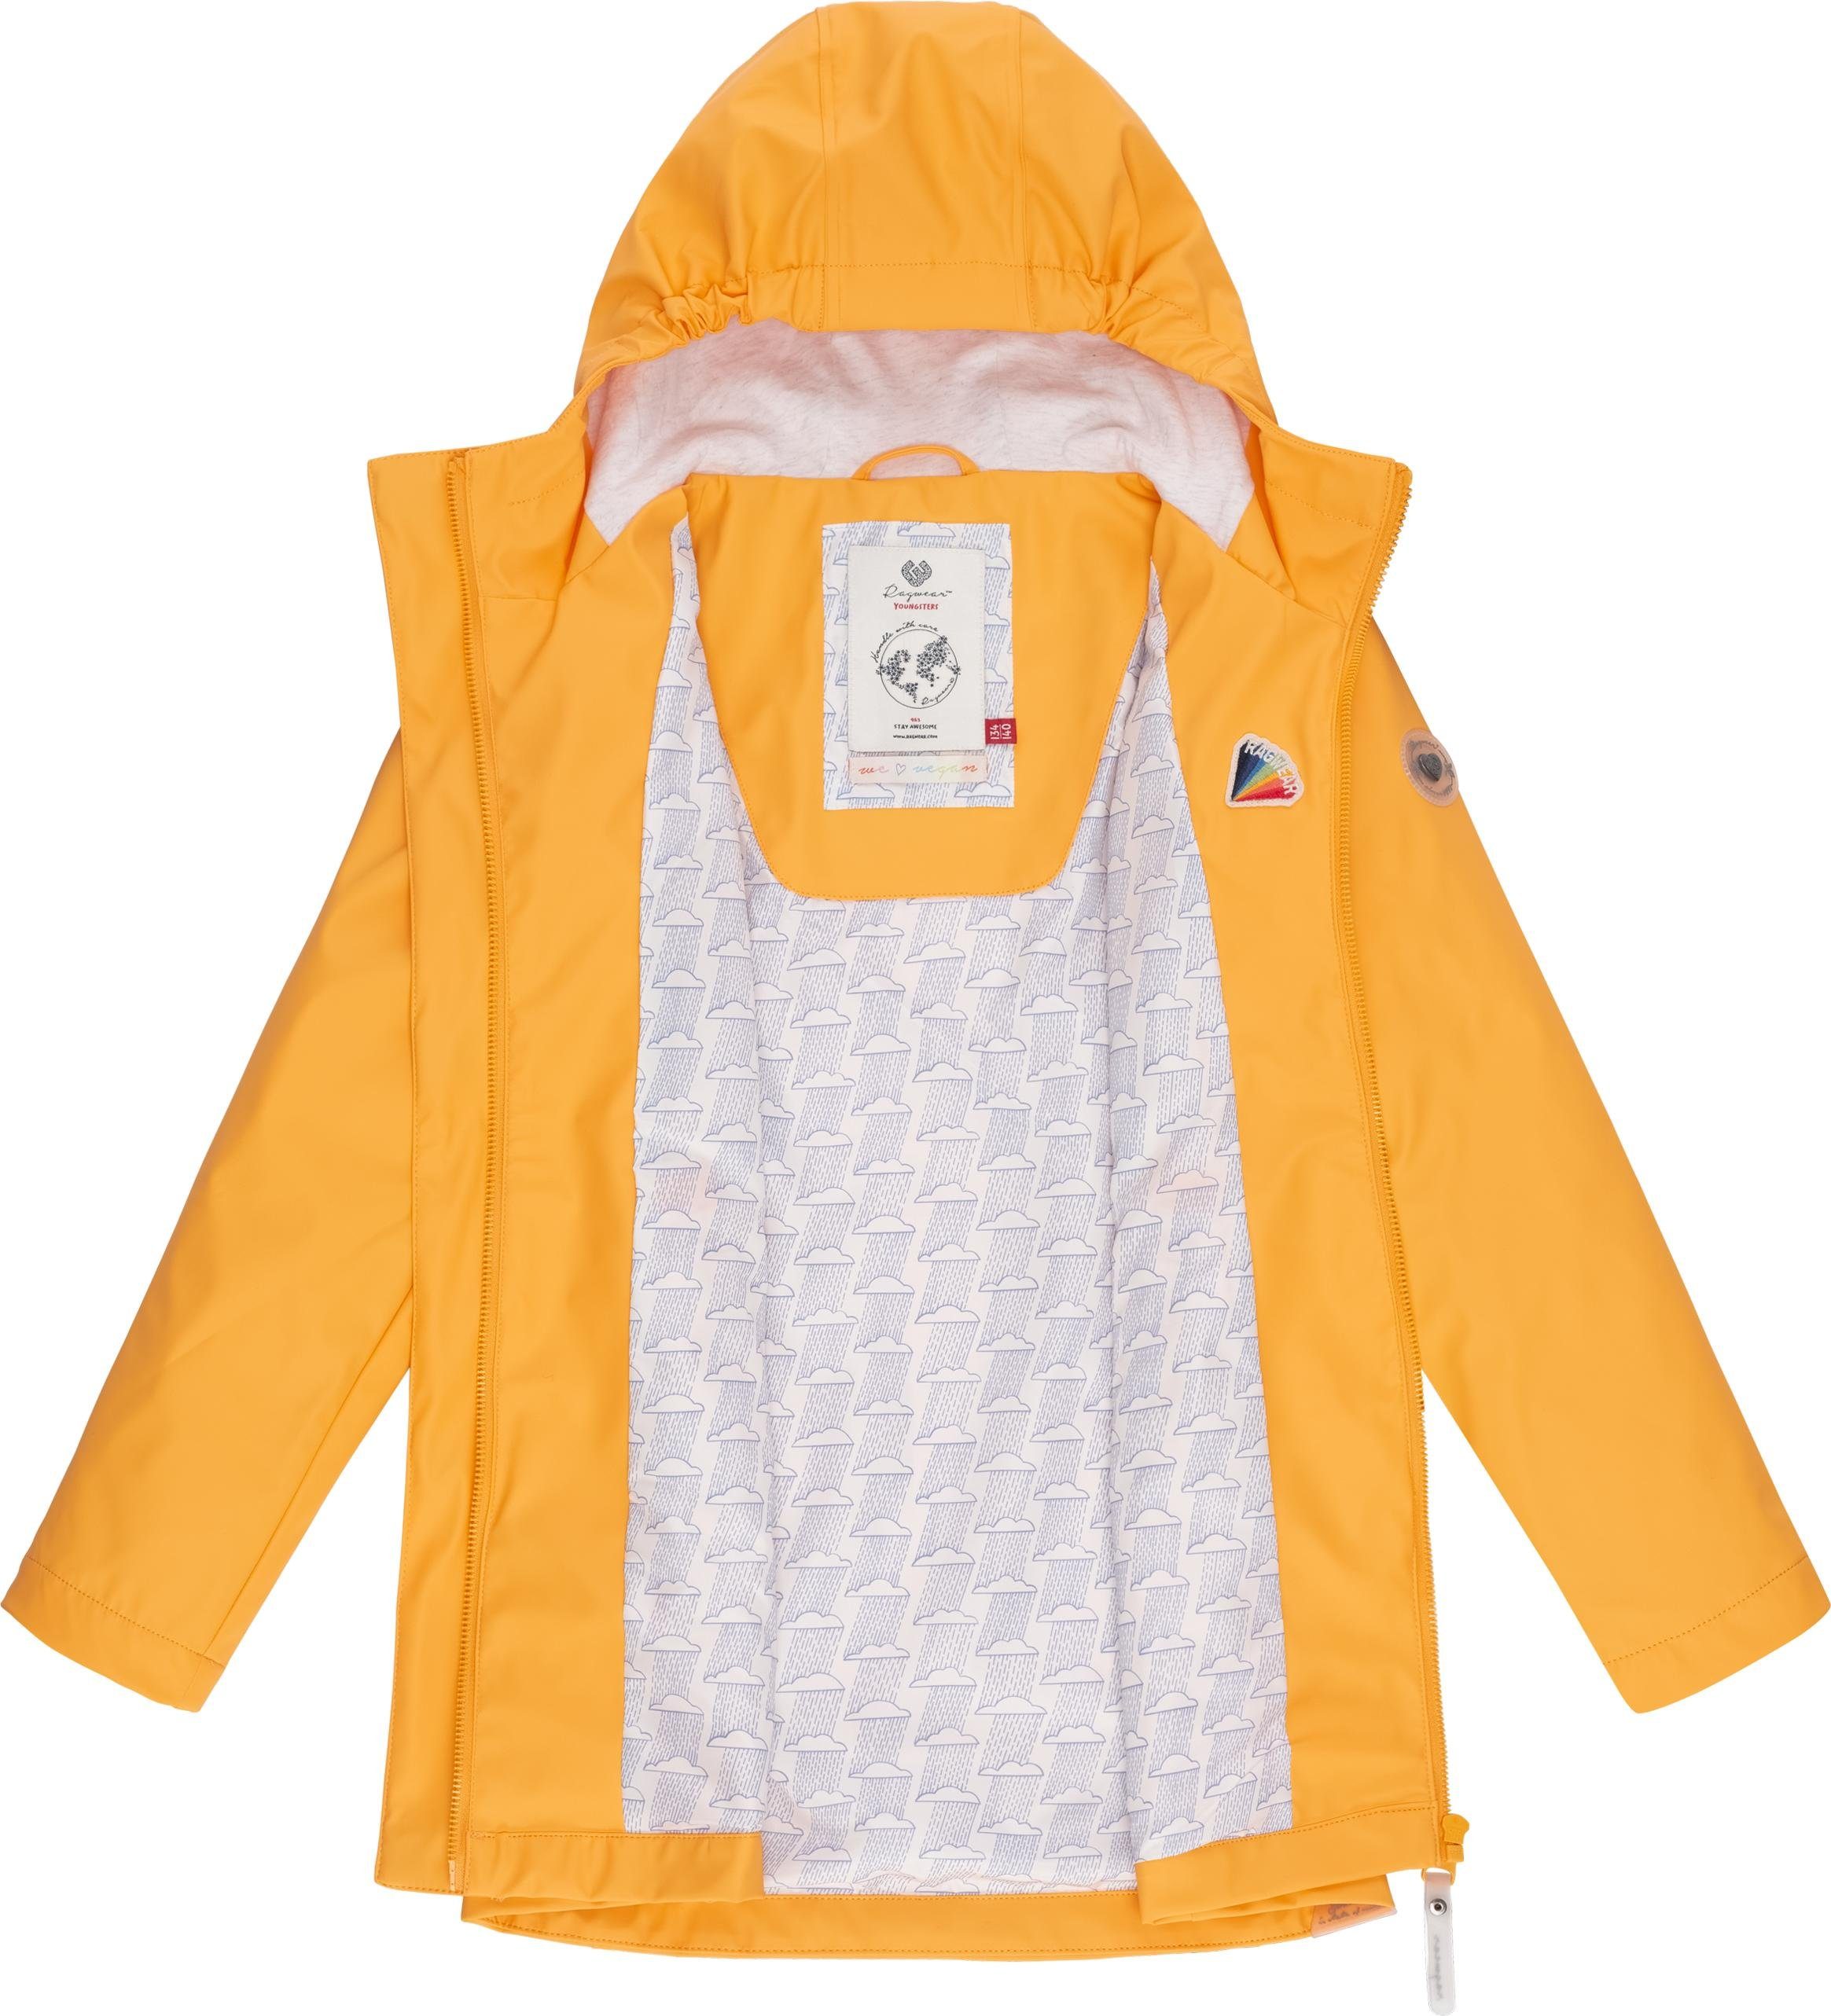 Regenparka mit geschweißten Nähten Regenmantel stylischer gelb Mädchen Marjanka II Ragwear